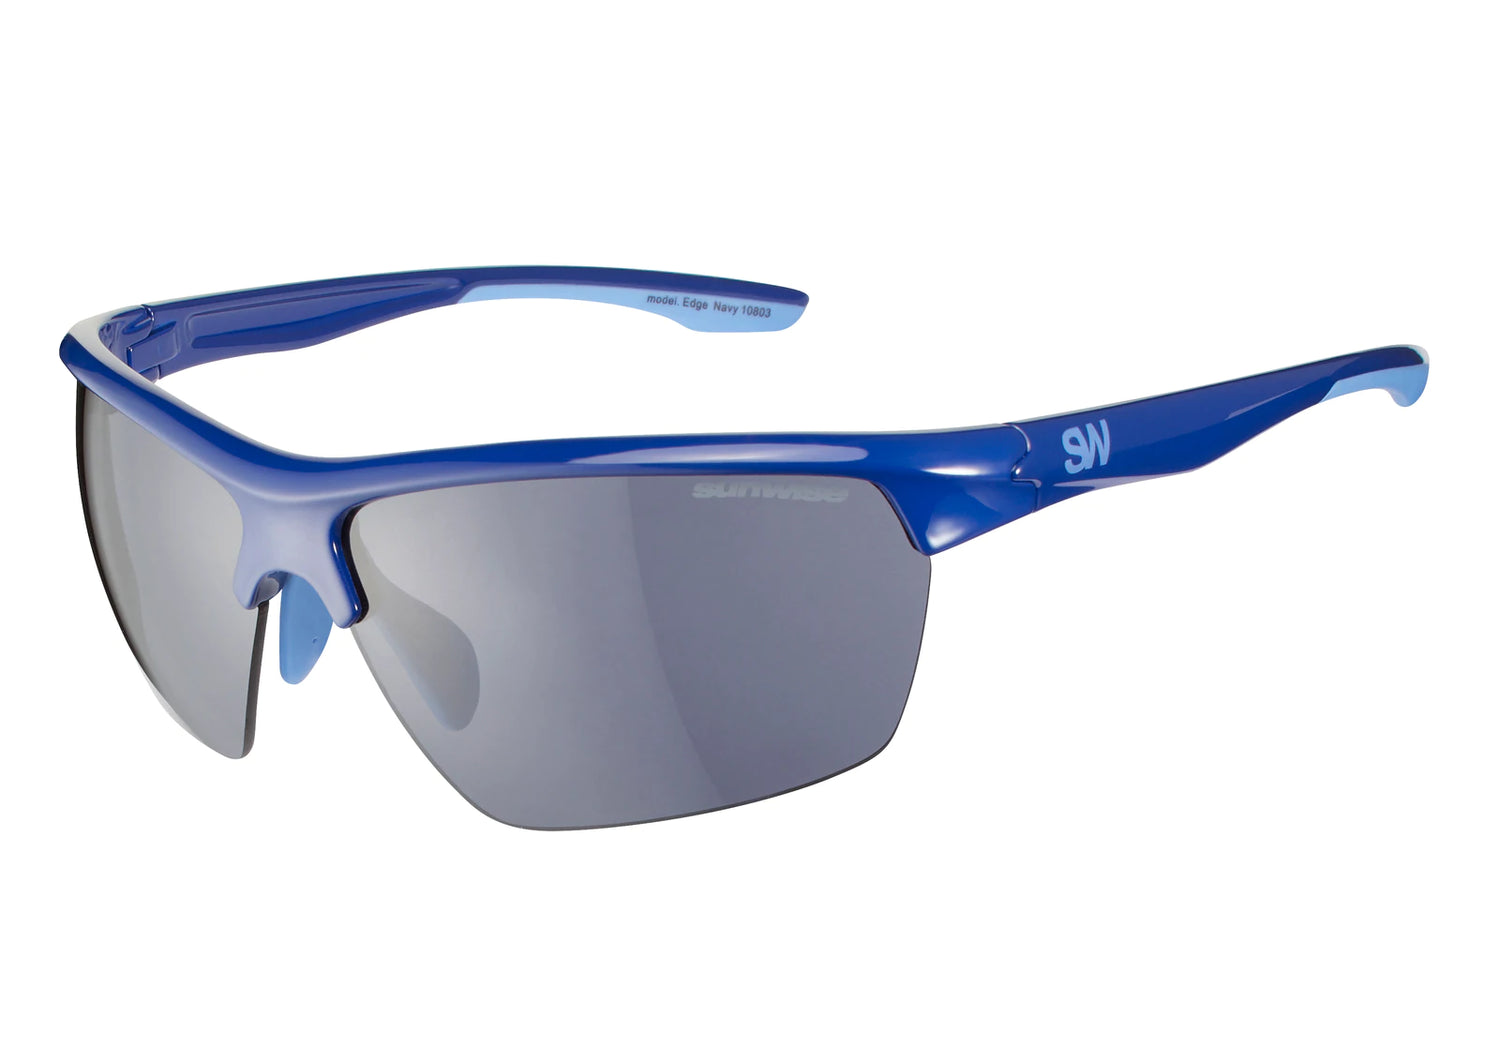 Sunwise Essentials Edge Sports Sunglasses